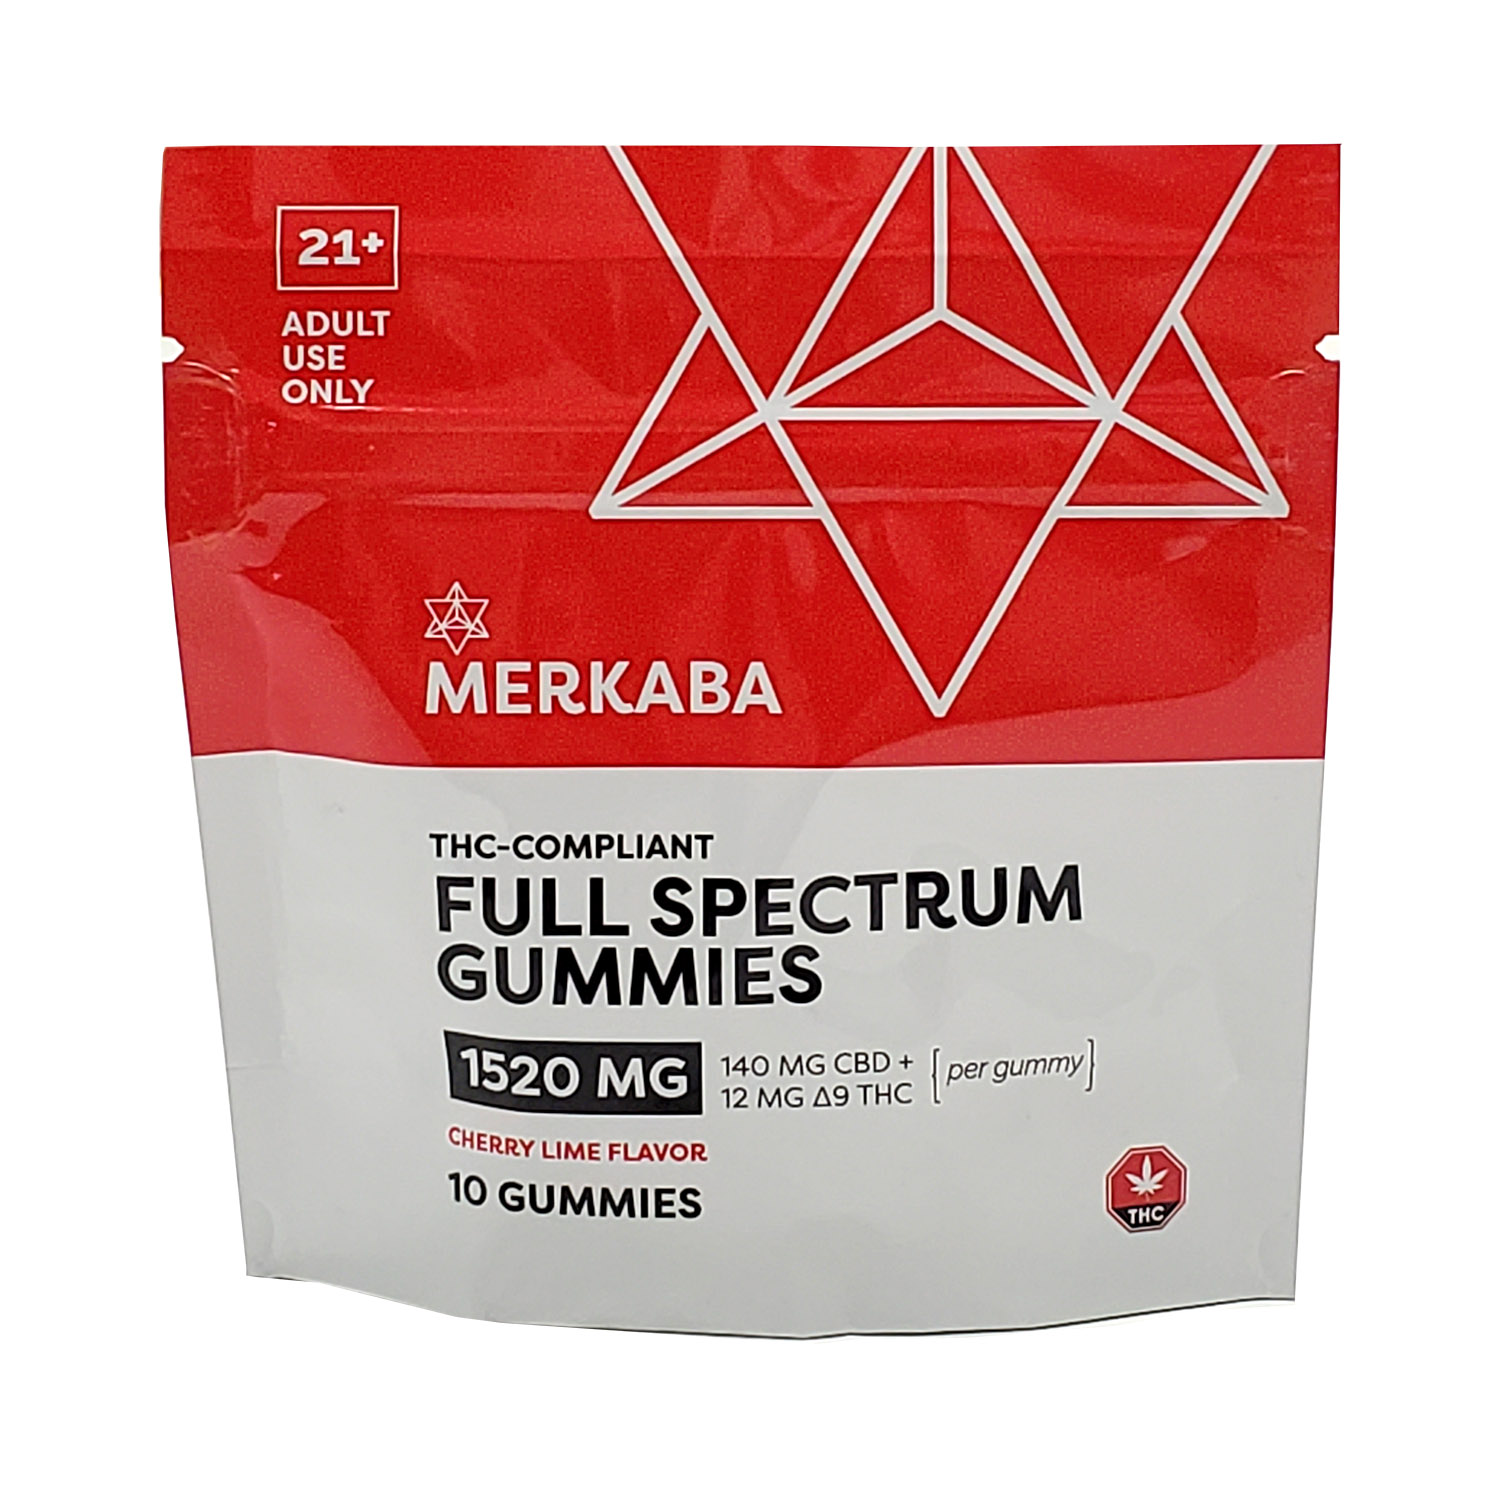 Merkaba-THC-Compliant-Full-Spectrum-Gummies